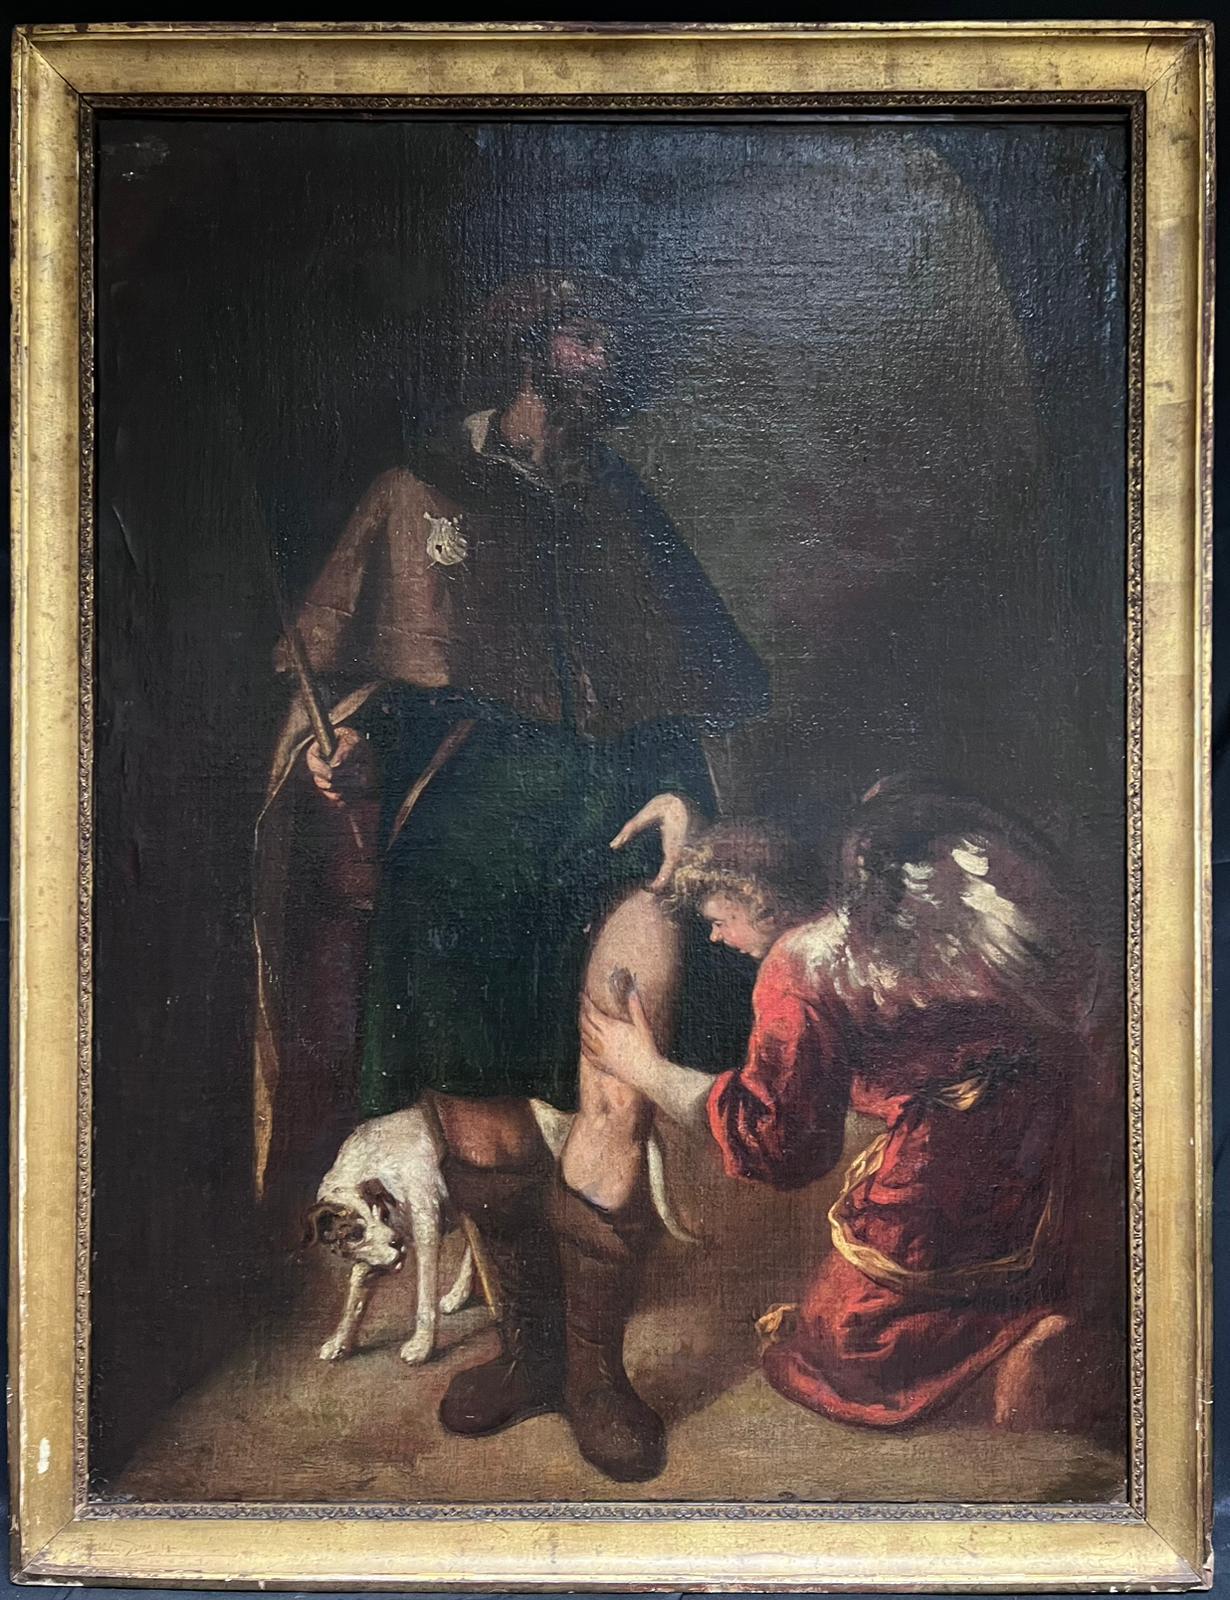 Spanish Old Master Figurative Painting – Großes spanisches Ölgemälde eines alten Meisters aus dem 17. Jahrhundert, verwundeter Pilger mit Engel, Ölgemälde